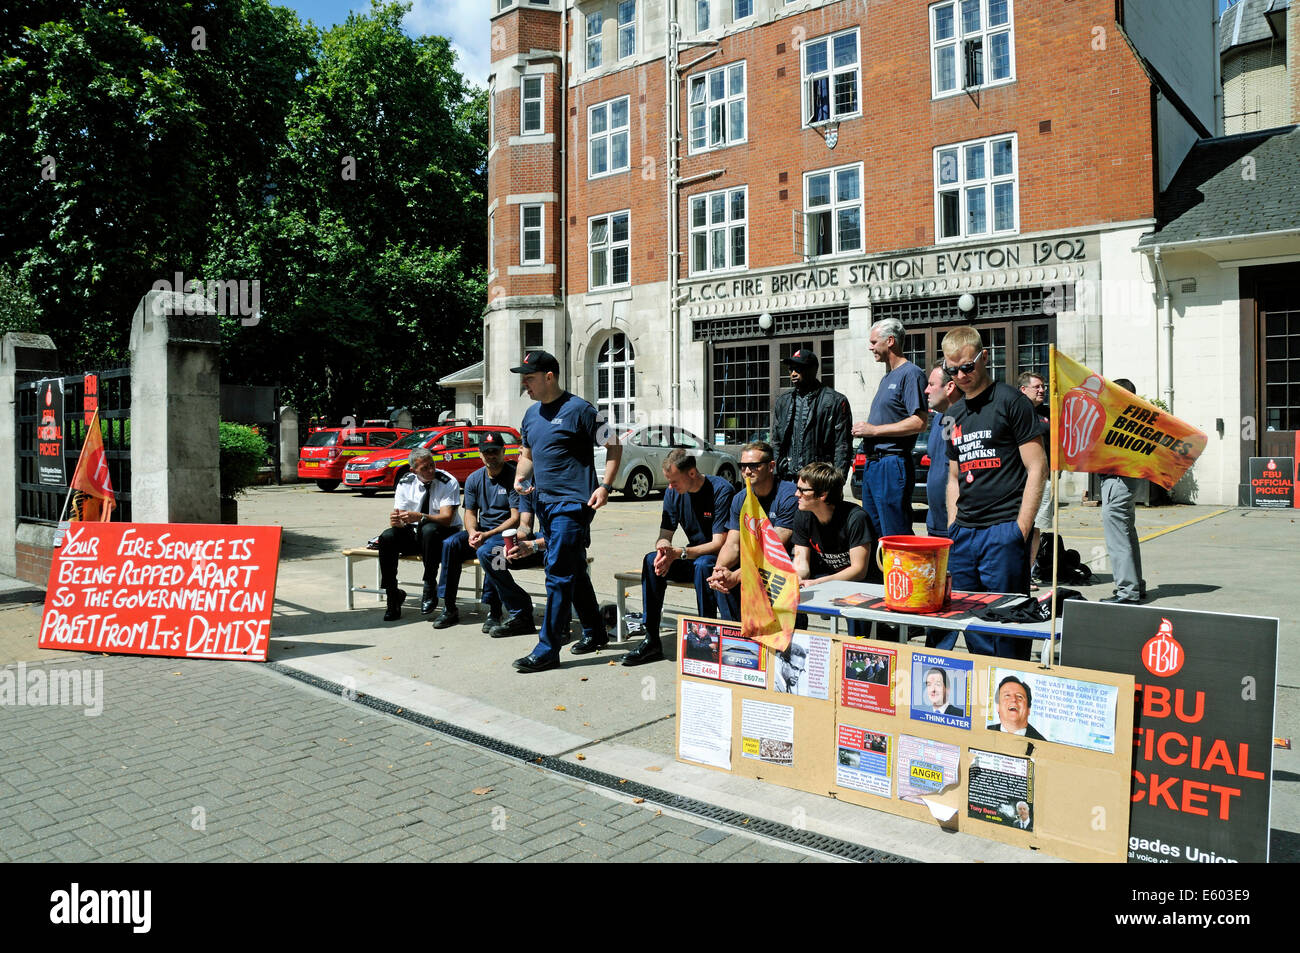 Markante Feuerwehrmann auf Streikposten außerhalb der Feuerwache in Euston Road, Central London, England Großbritannien UK Samstag 9. August Stockfoto